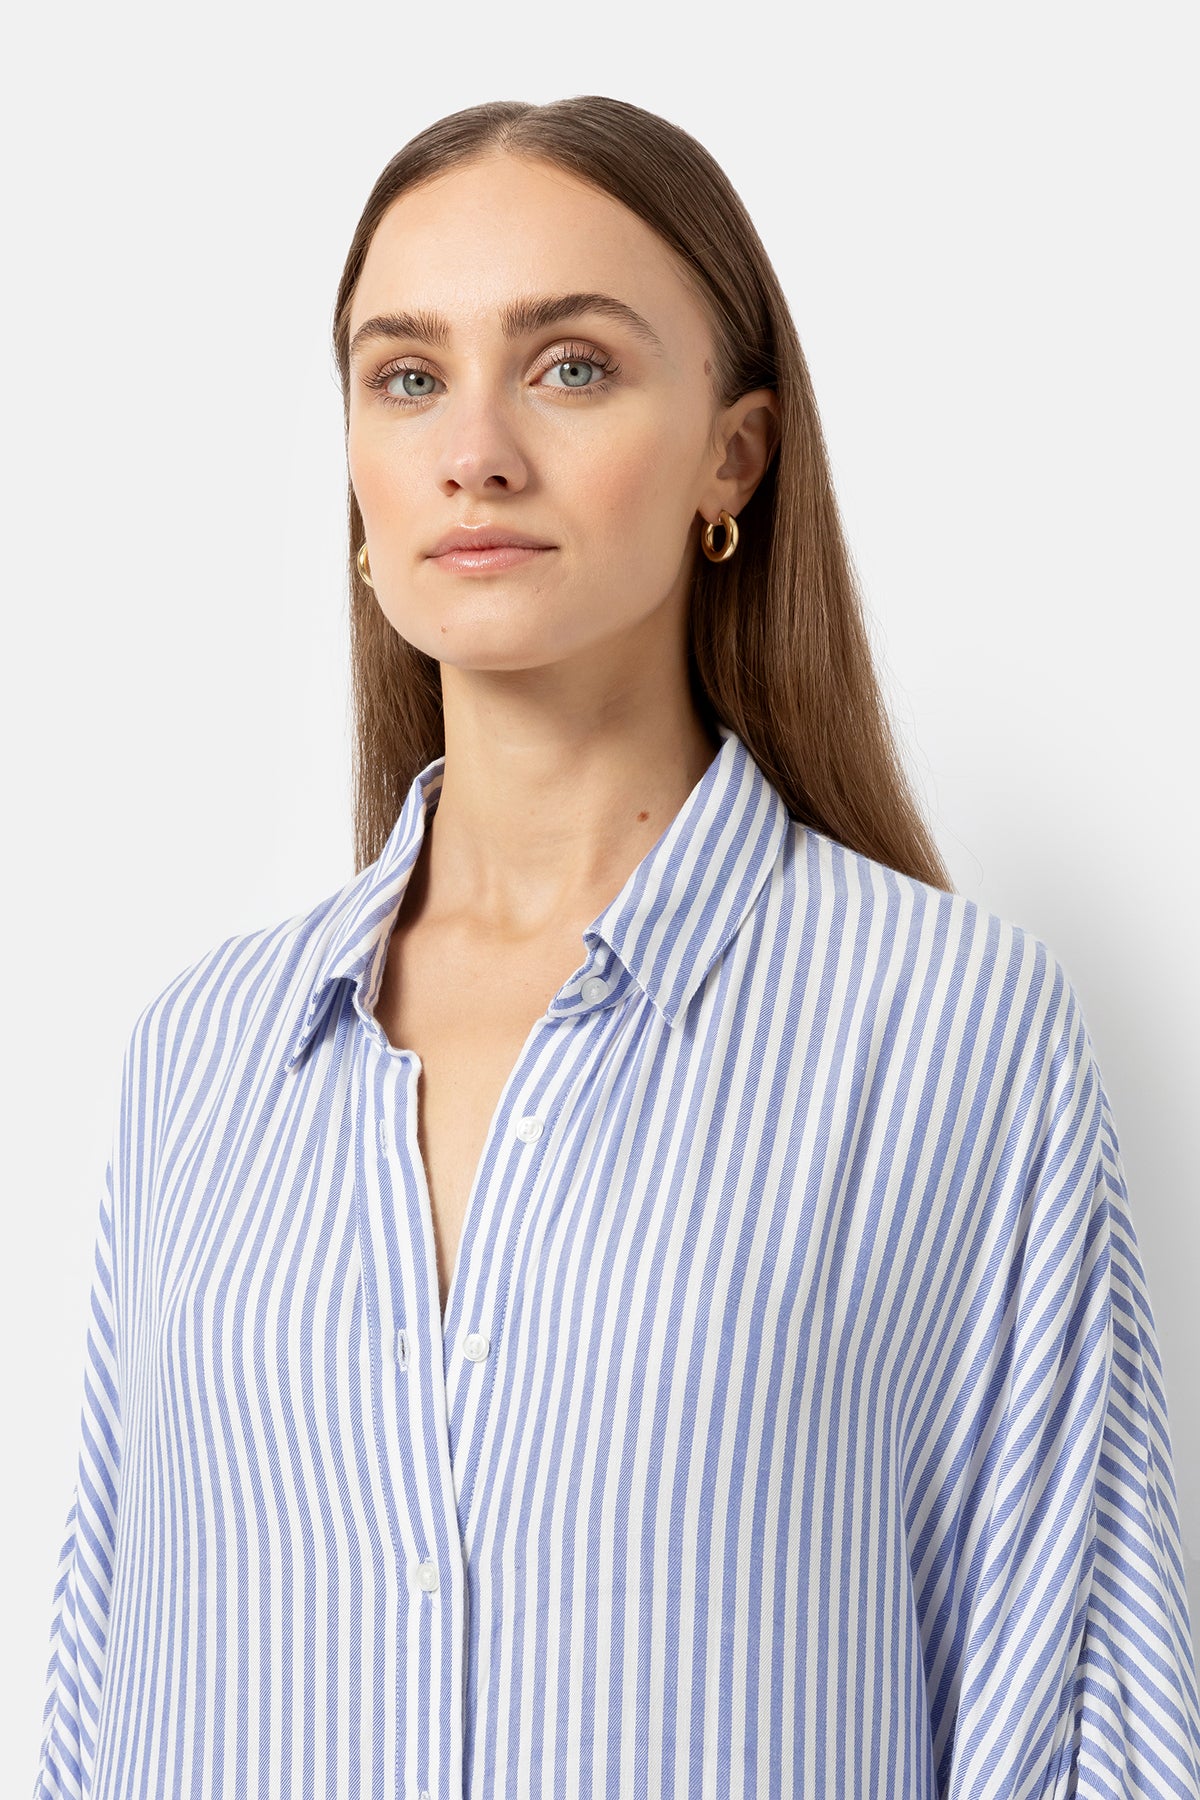 Jelena Long Shirt Dress | White & Blue Stripes